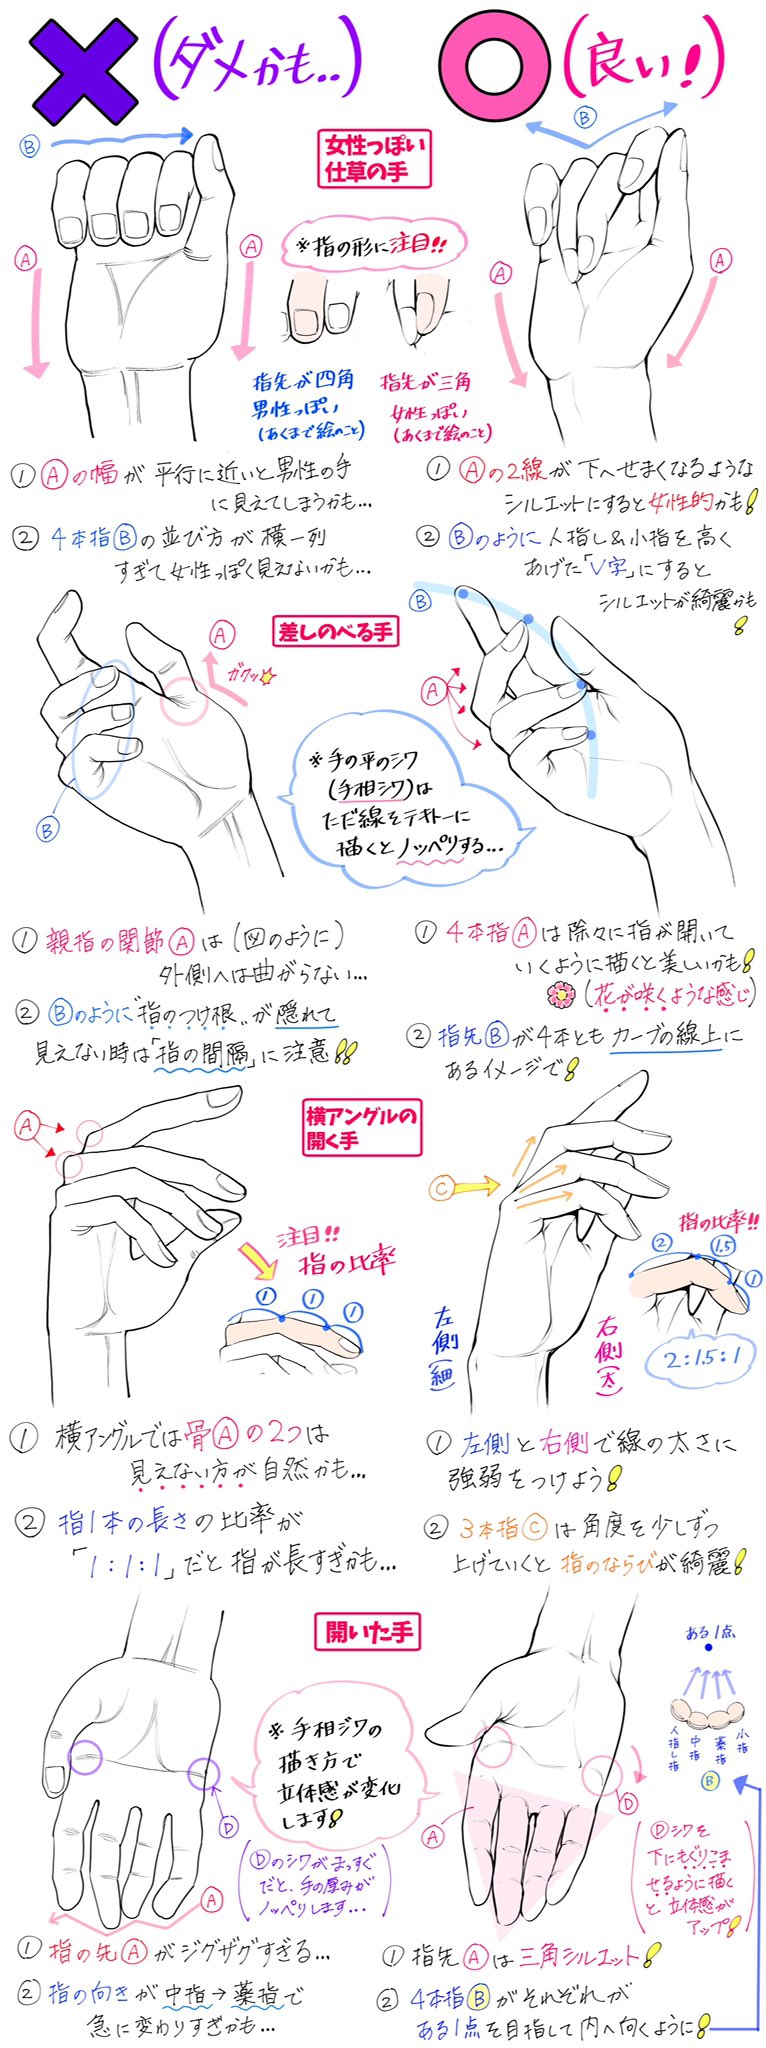 吉村拓也 イラスト講座 腕から手の角度 が描けない人へ 手の筋肉や肩まわりが一気に上達する ダメかも と 良いかも T Co Sjycsv59fr Twitter